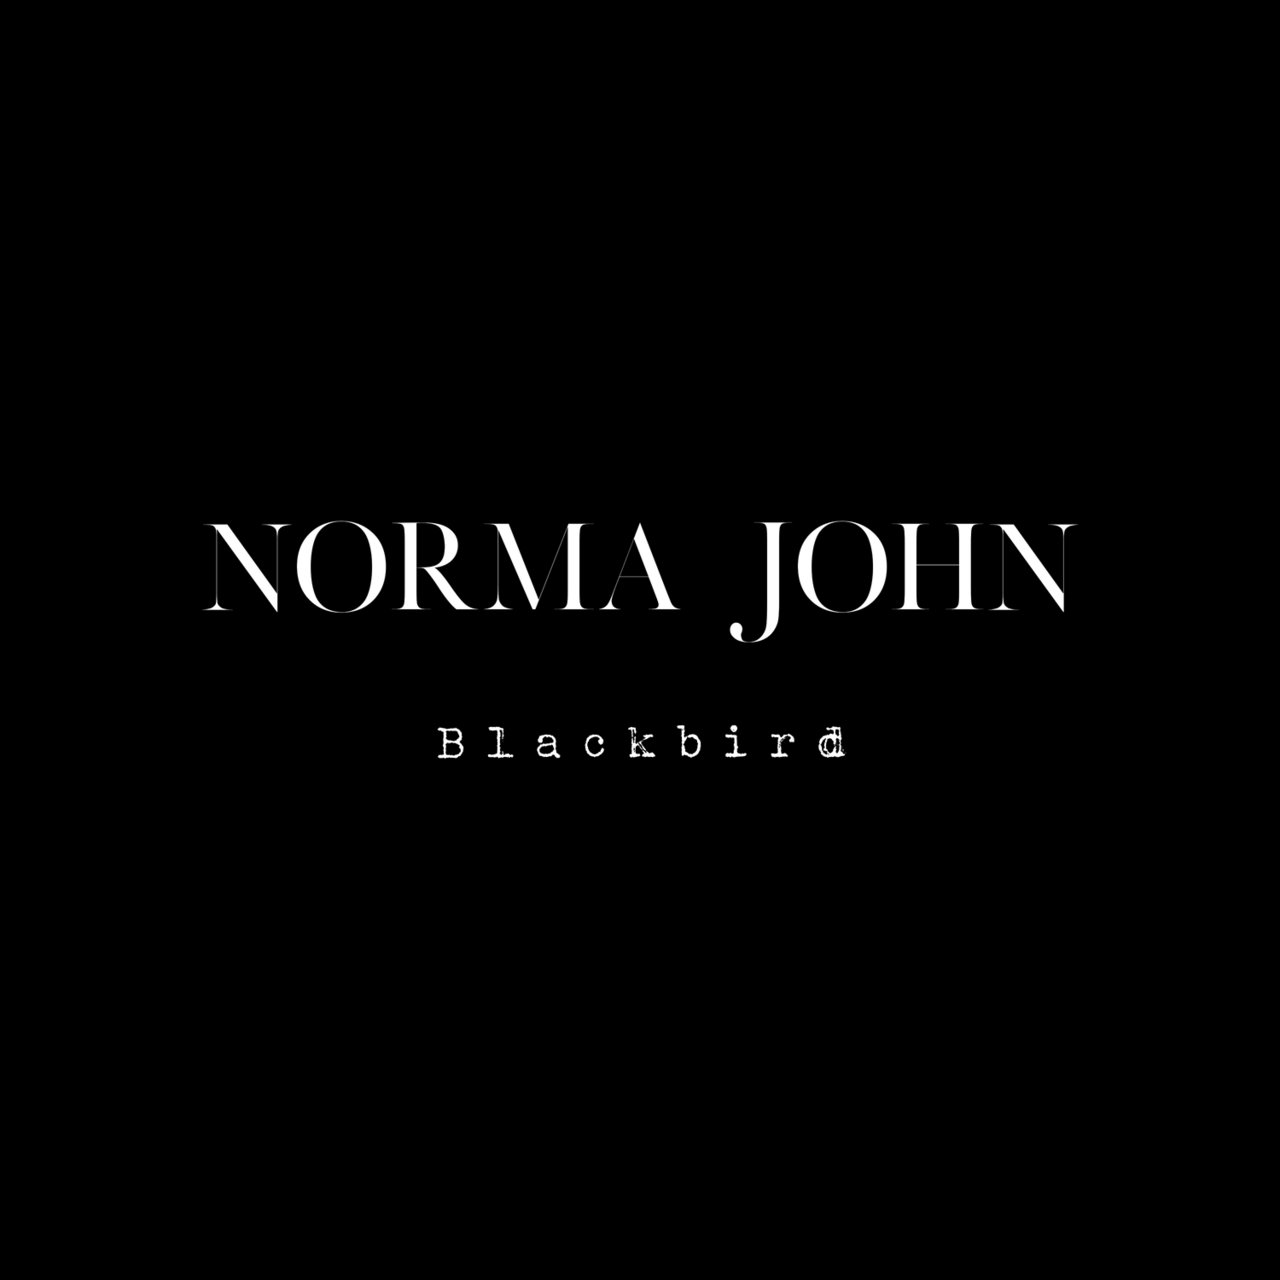 Norma John Blackbird cover artwork